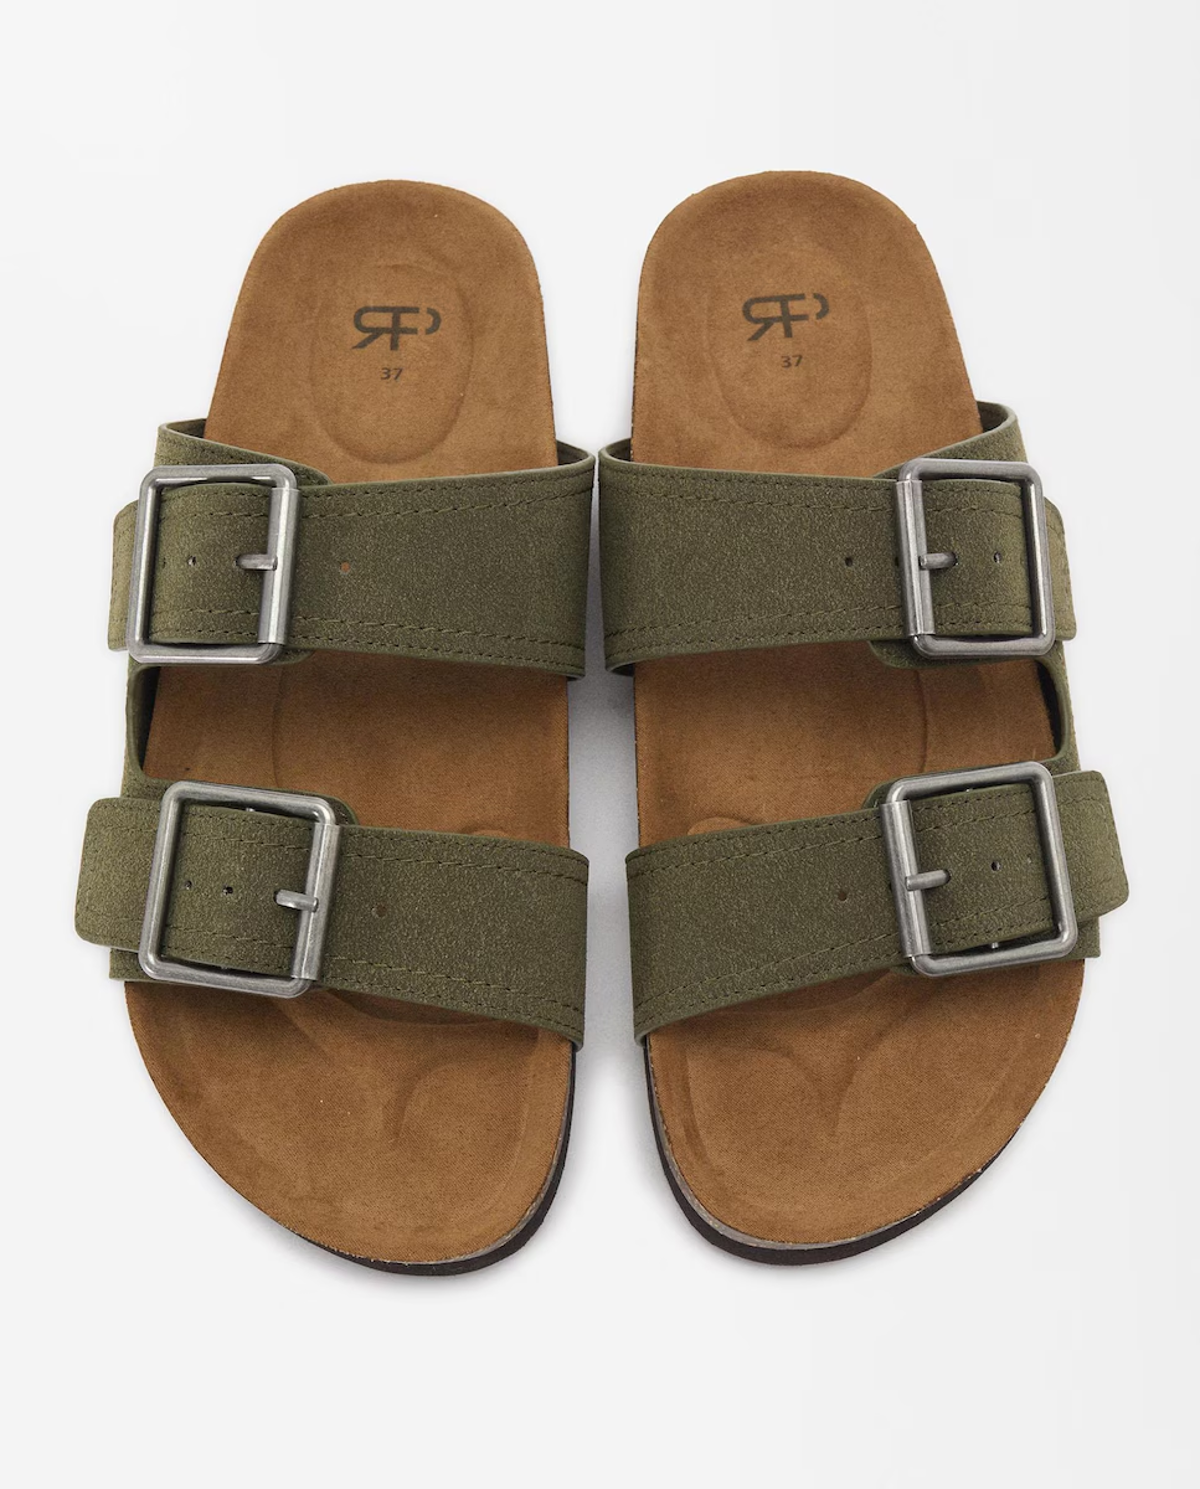 estas son las sandalias planas de estilo birkenstock que parfois agotará en verano porque perfectas para jornadas todoterreno